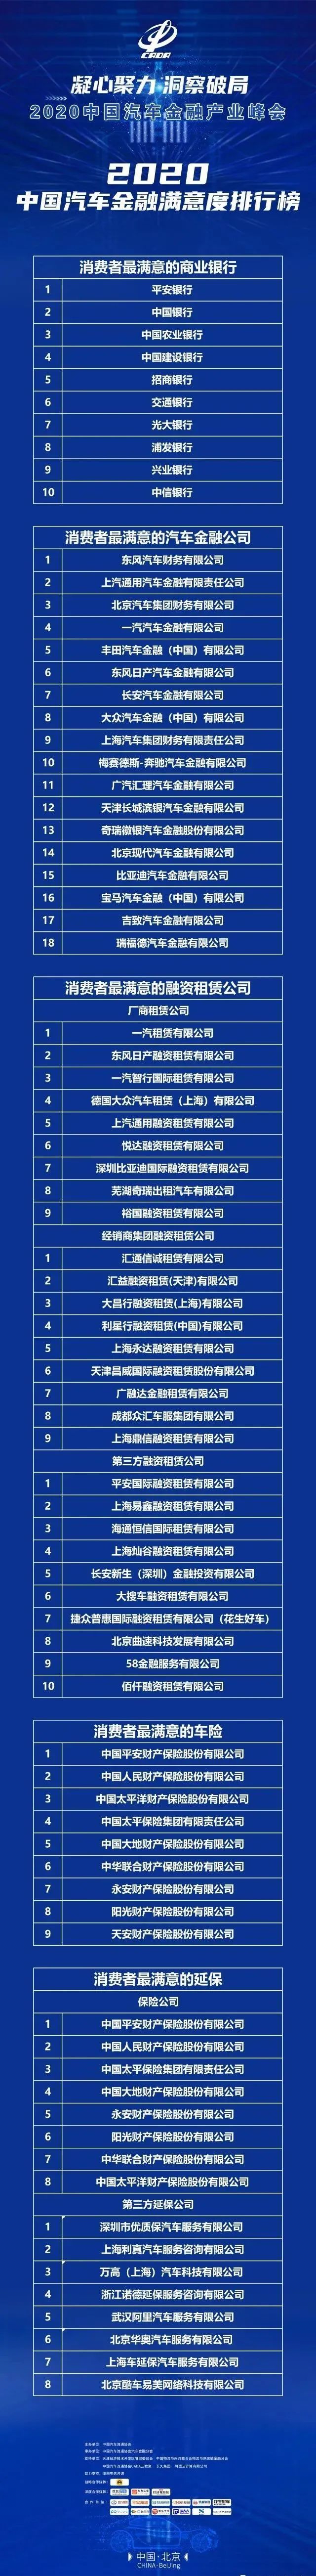 2020经济全国排名榜_2020中国县域经济百强榜出炉,湖南5县市上榜!(2)